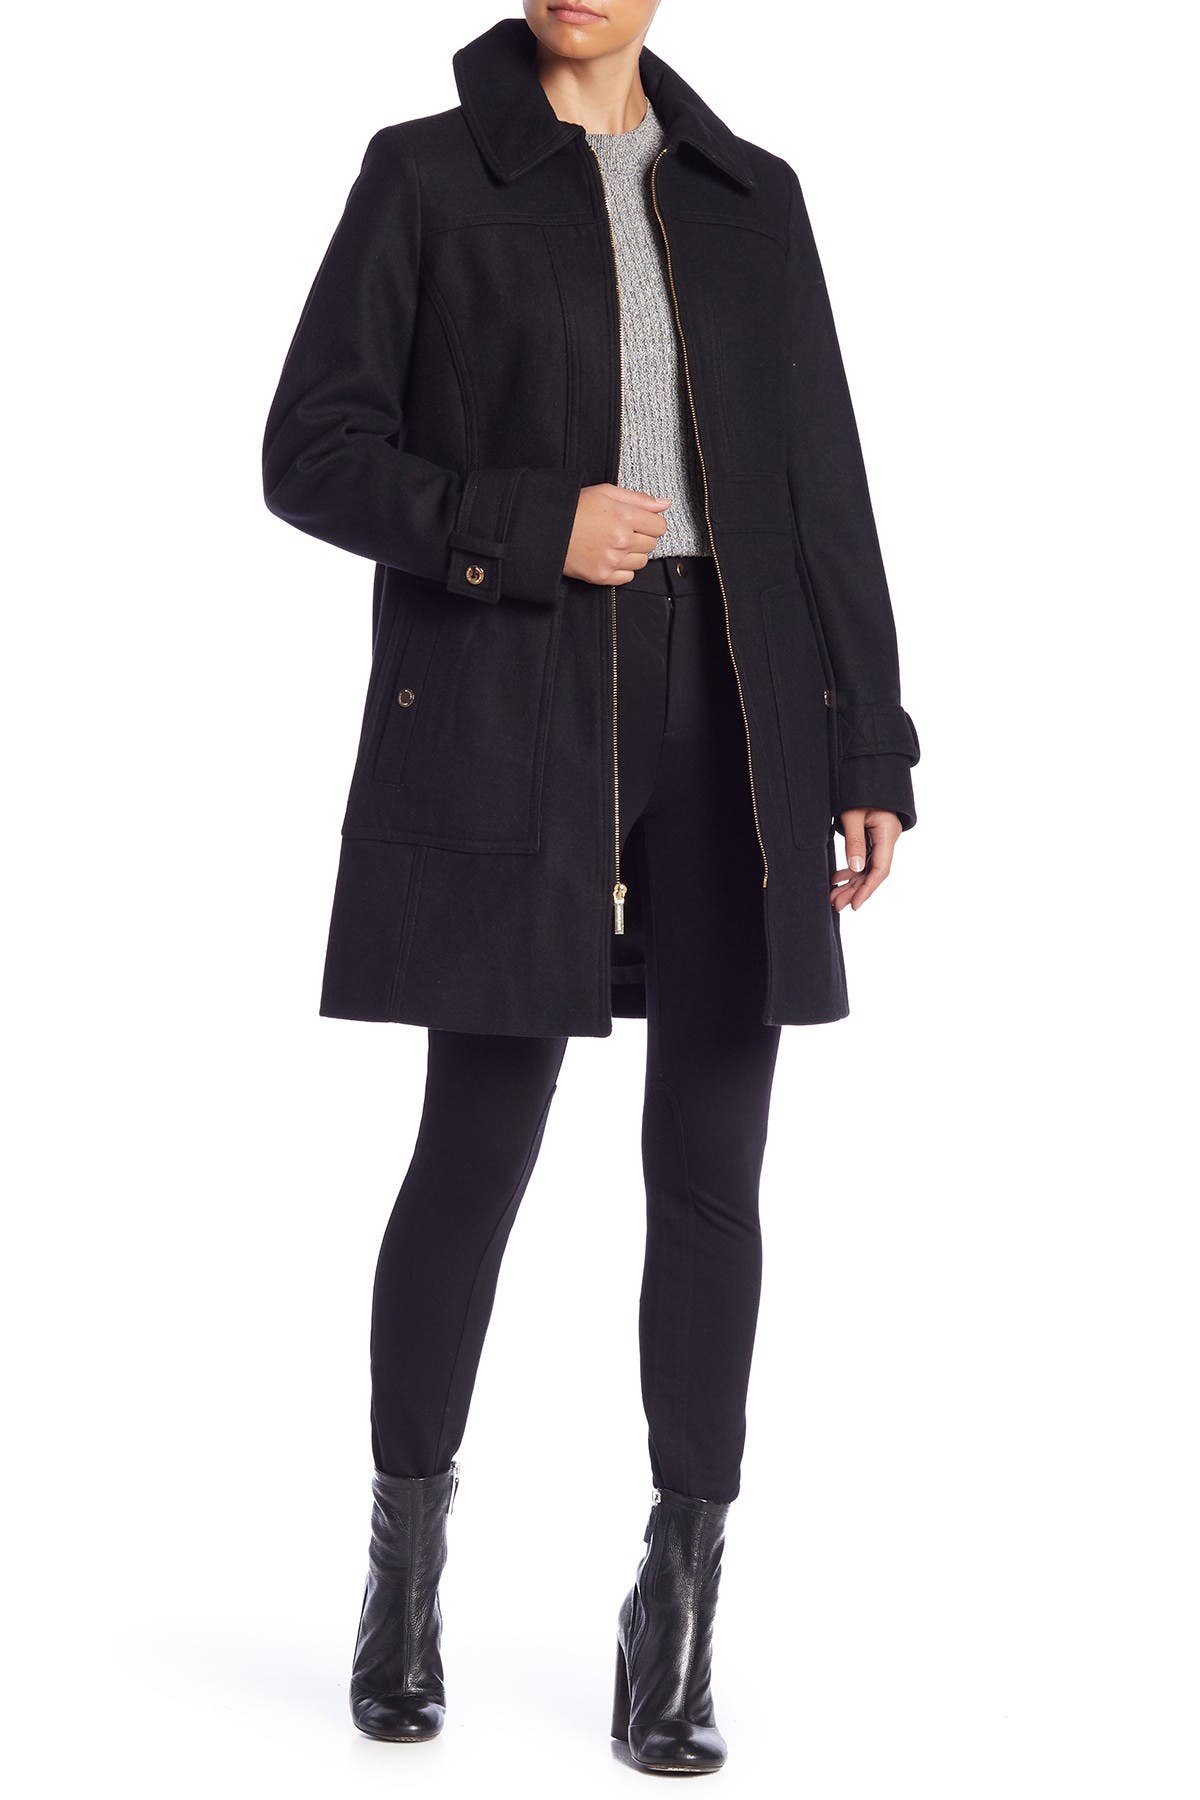 michael kors wool blend zip front coat